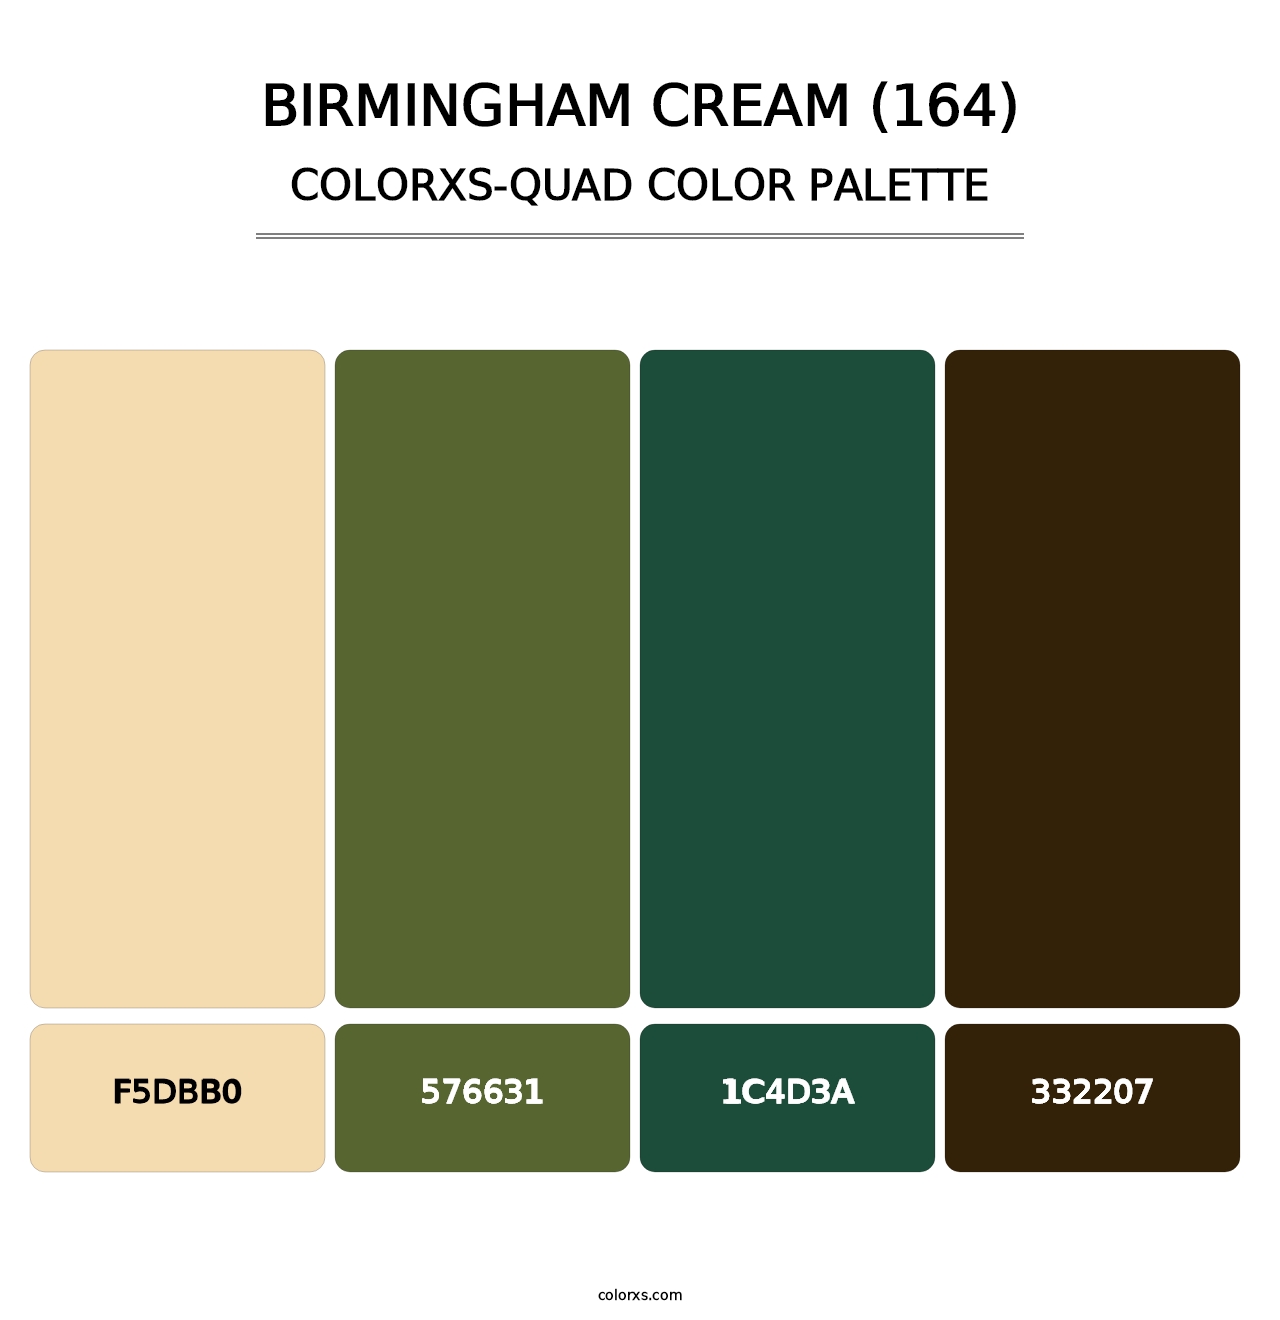 Birmingham Cream (164) - Colorxs Quad Palette